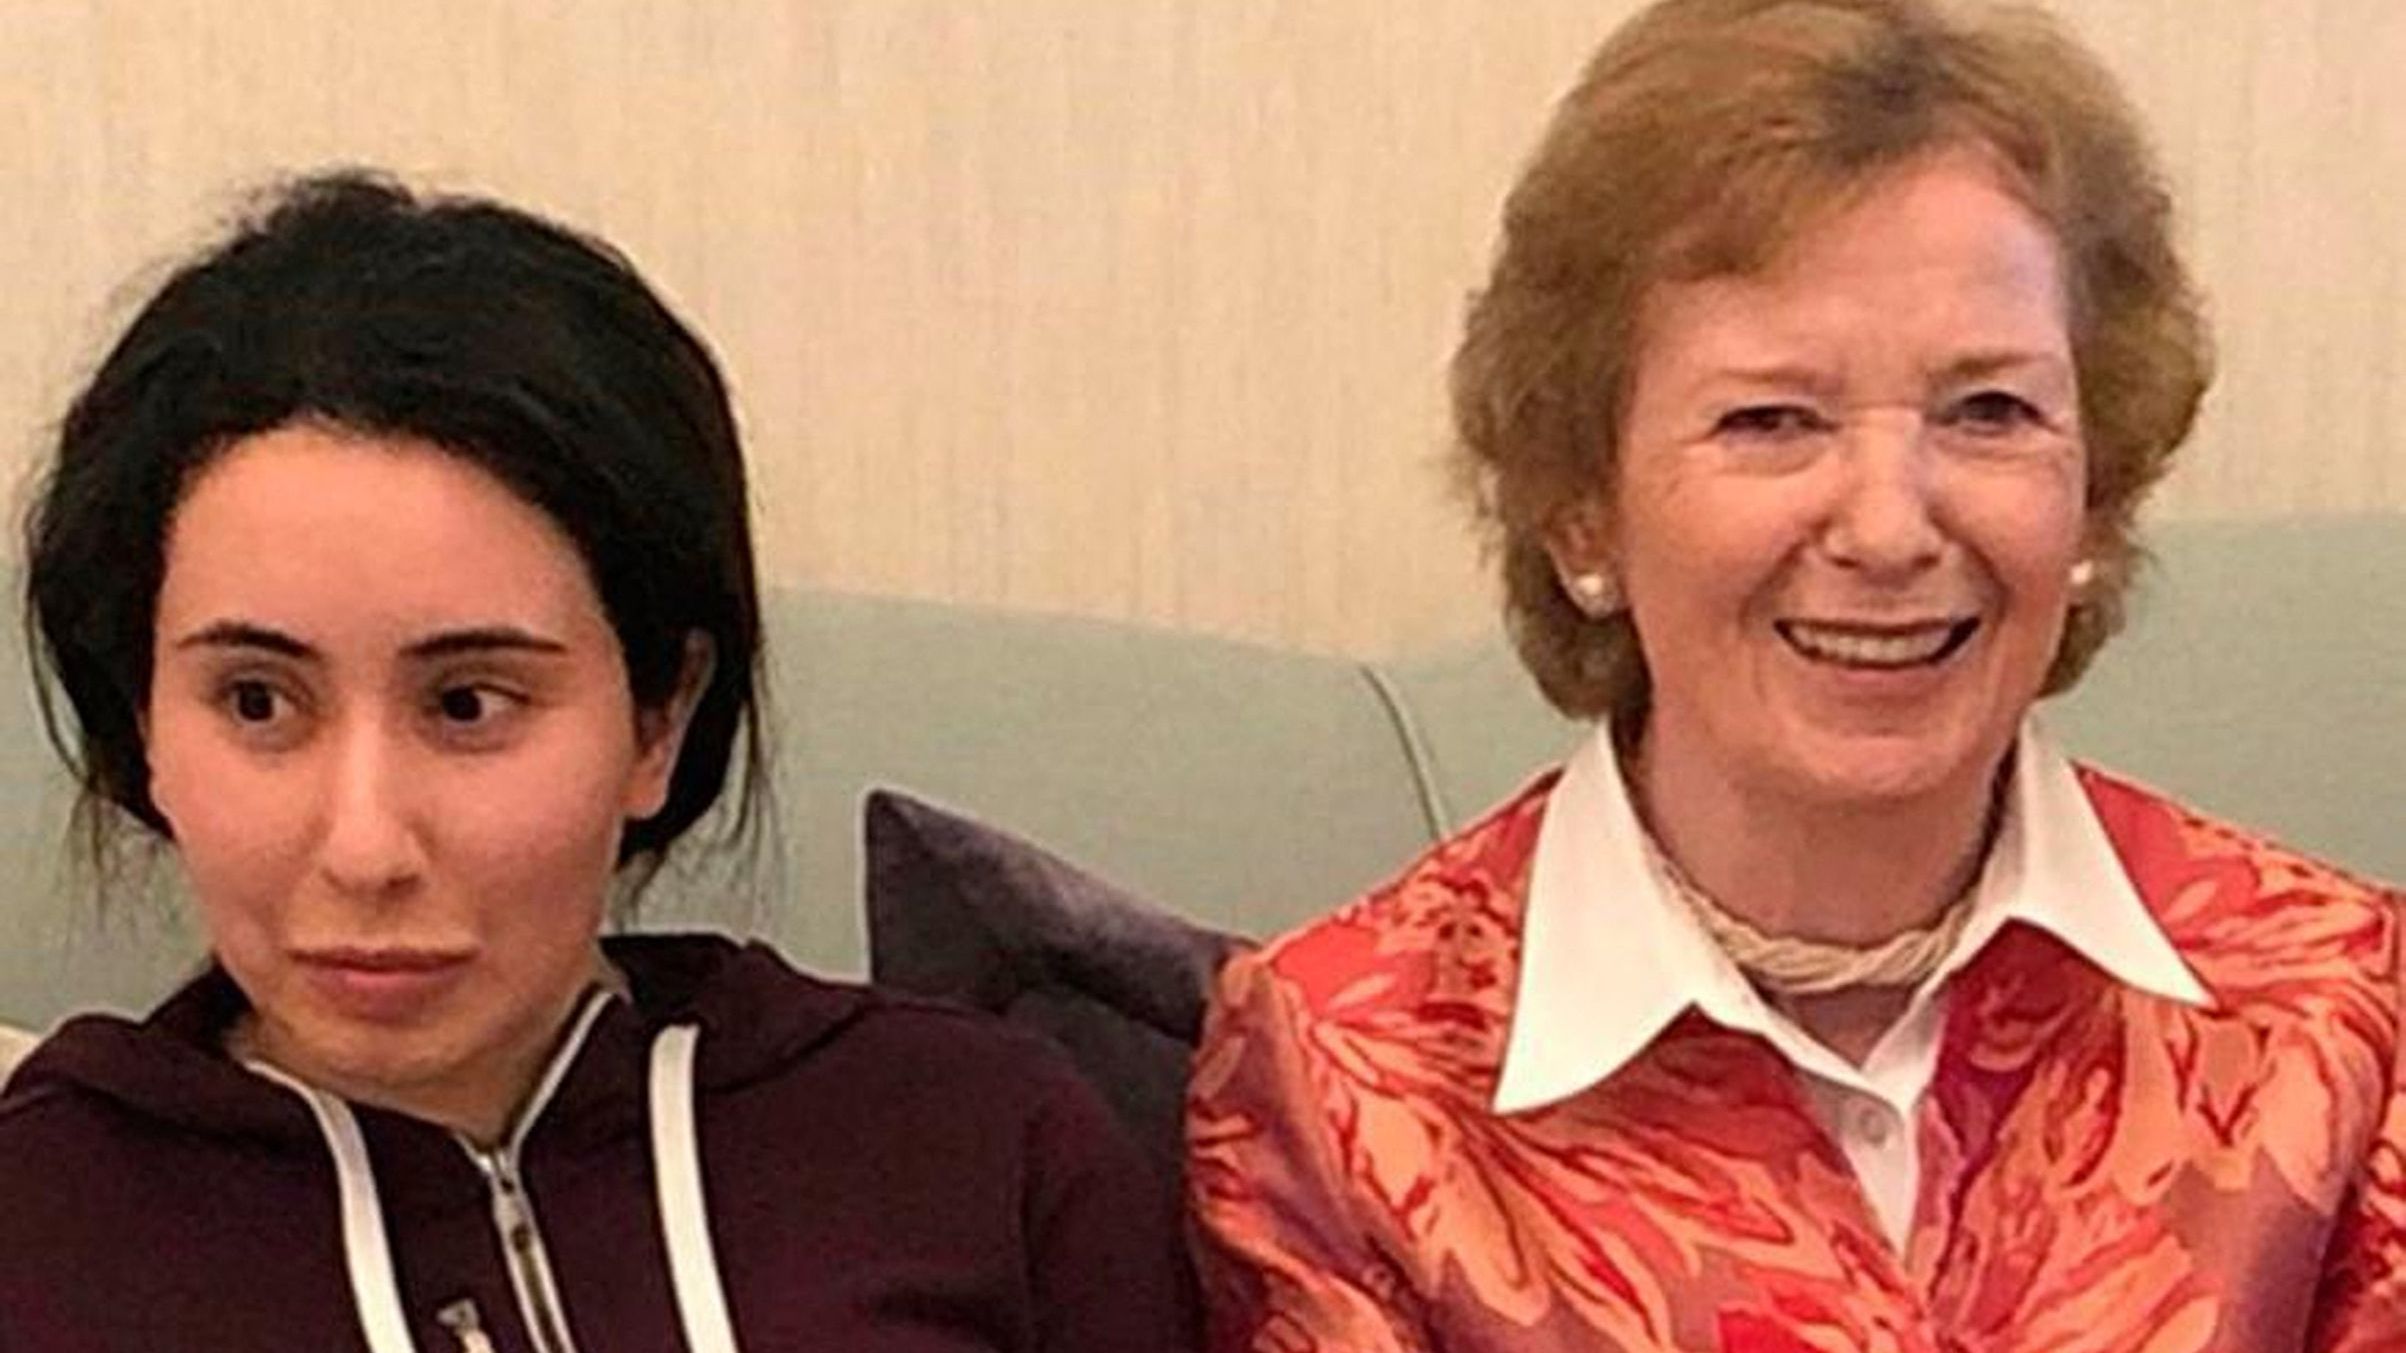 Prinzessin Latifa bint Mohammed al-Maktoum nimmt mit der ehemaligen irischen Präsidentin Mary Robinson 2018 ein Mittagessen in Dubai ein. Videos davon werden ins Internet gestellt. Die Message: Latifa geht es gut. Doch die wirkt merkwürdig teilnahmslos.